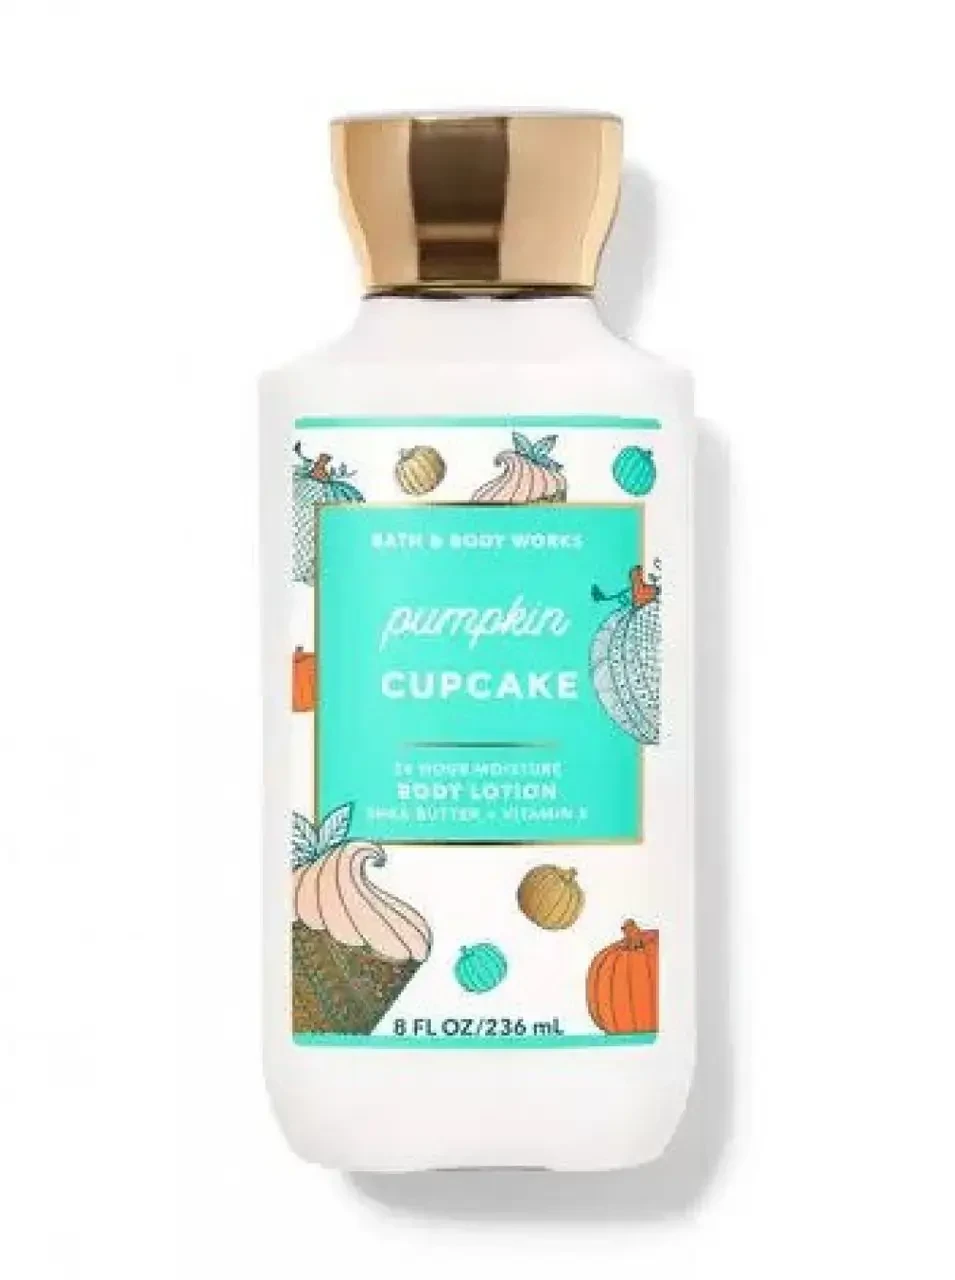 Pumpkin Cupcake парфумований лосьйон для тіла від Bath and Body Works оригінал